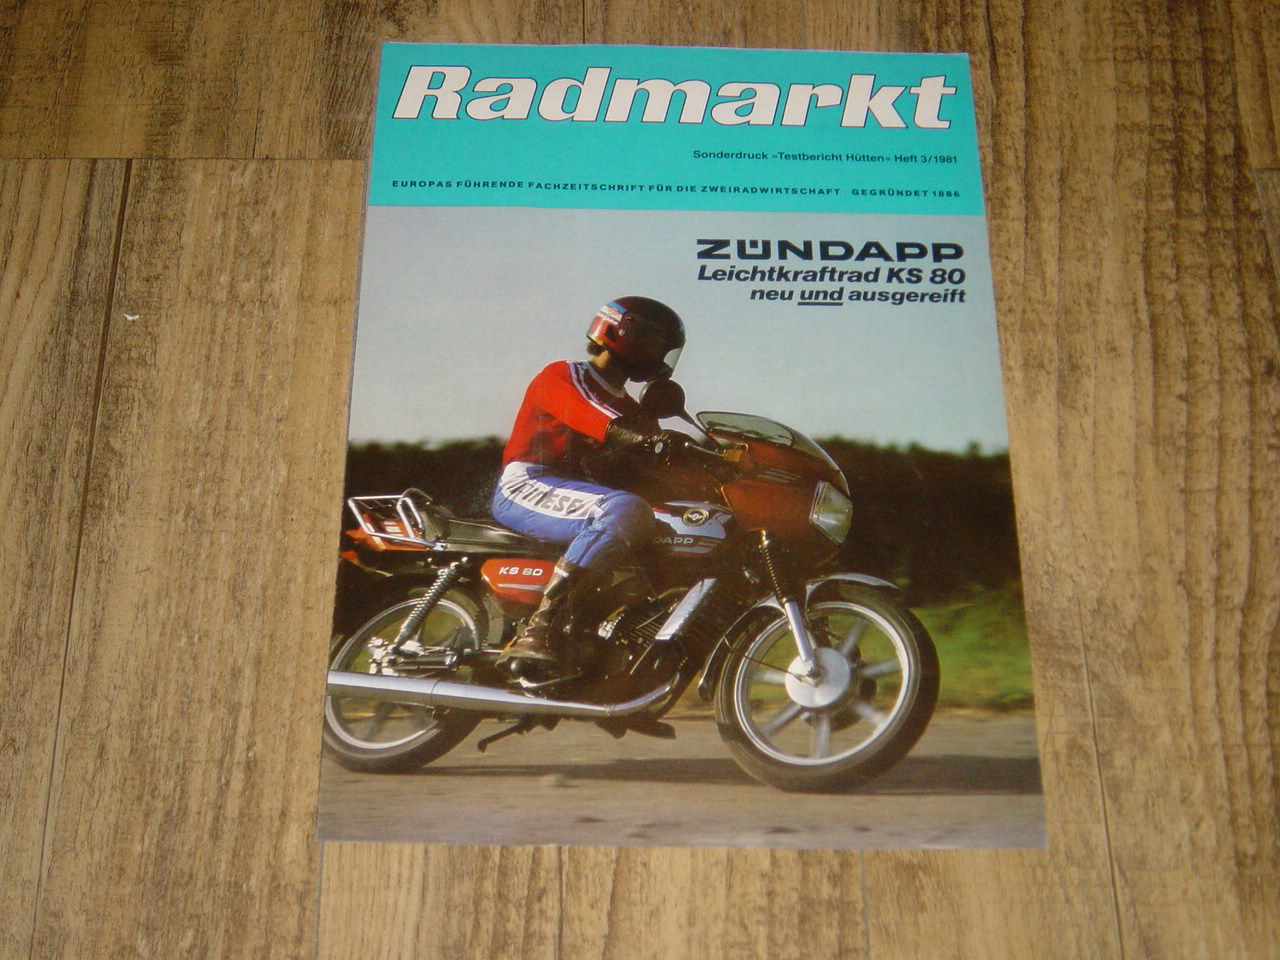 Promotional brochure D - Radmarkt Leichtkraftrad KS 80 neu und a